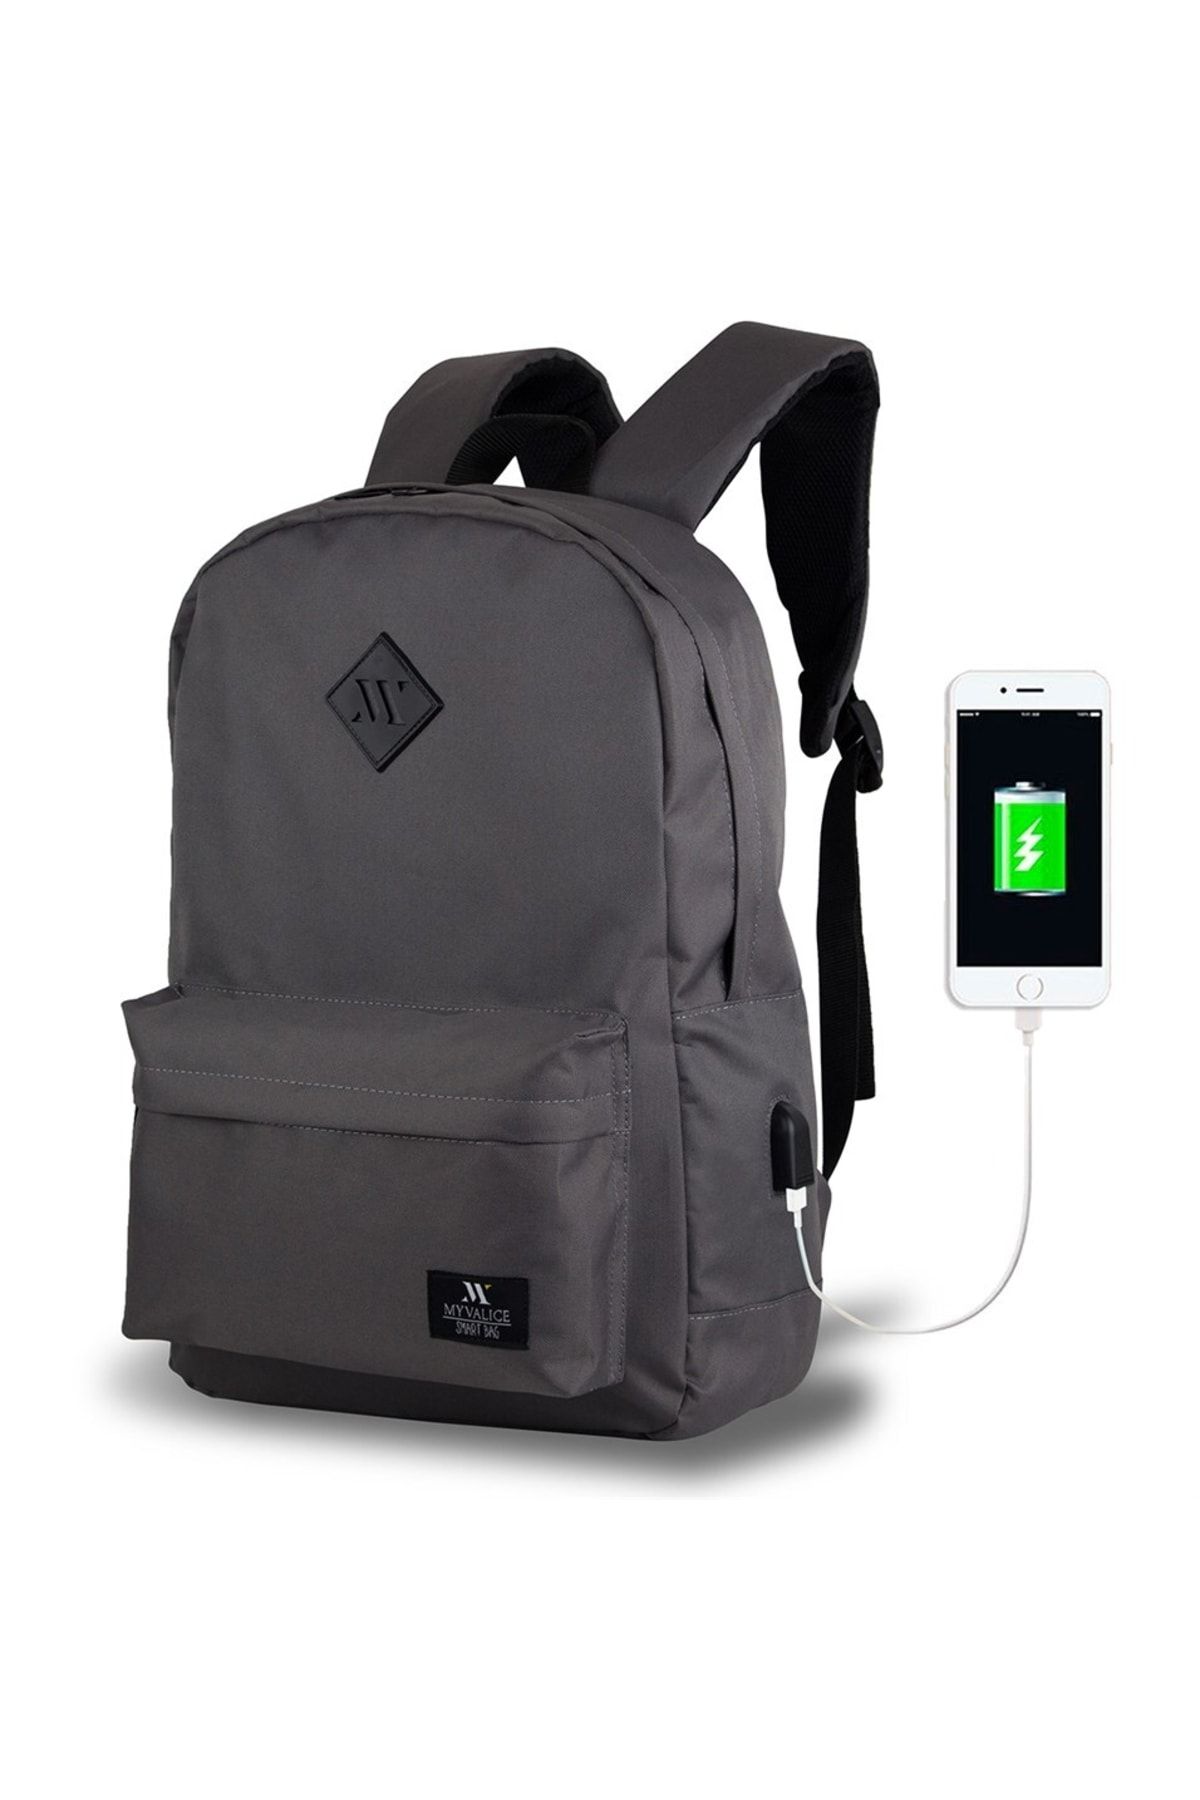 My Valice Smart Bag Specta Usb Şarj Girişli Akıllı Laptop Sırt Çantası Gri